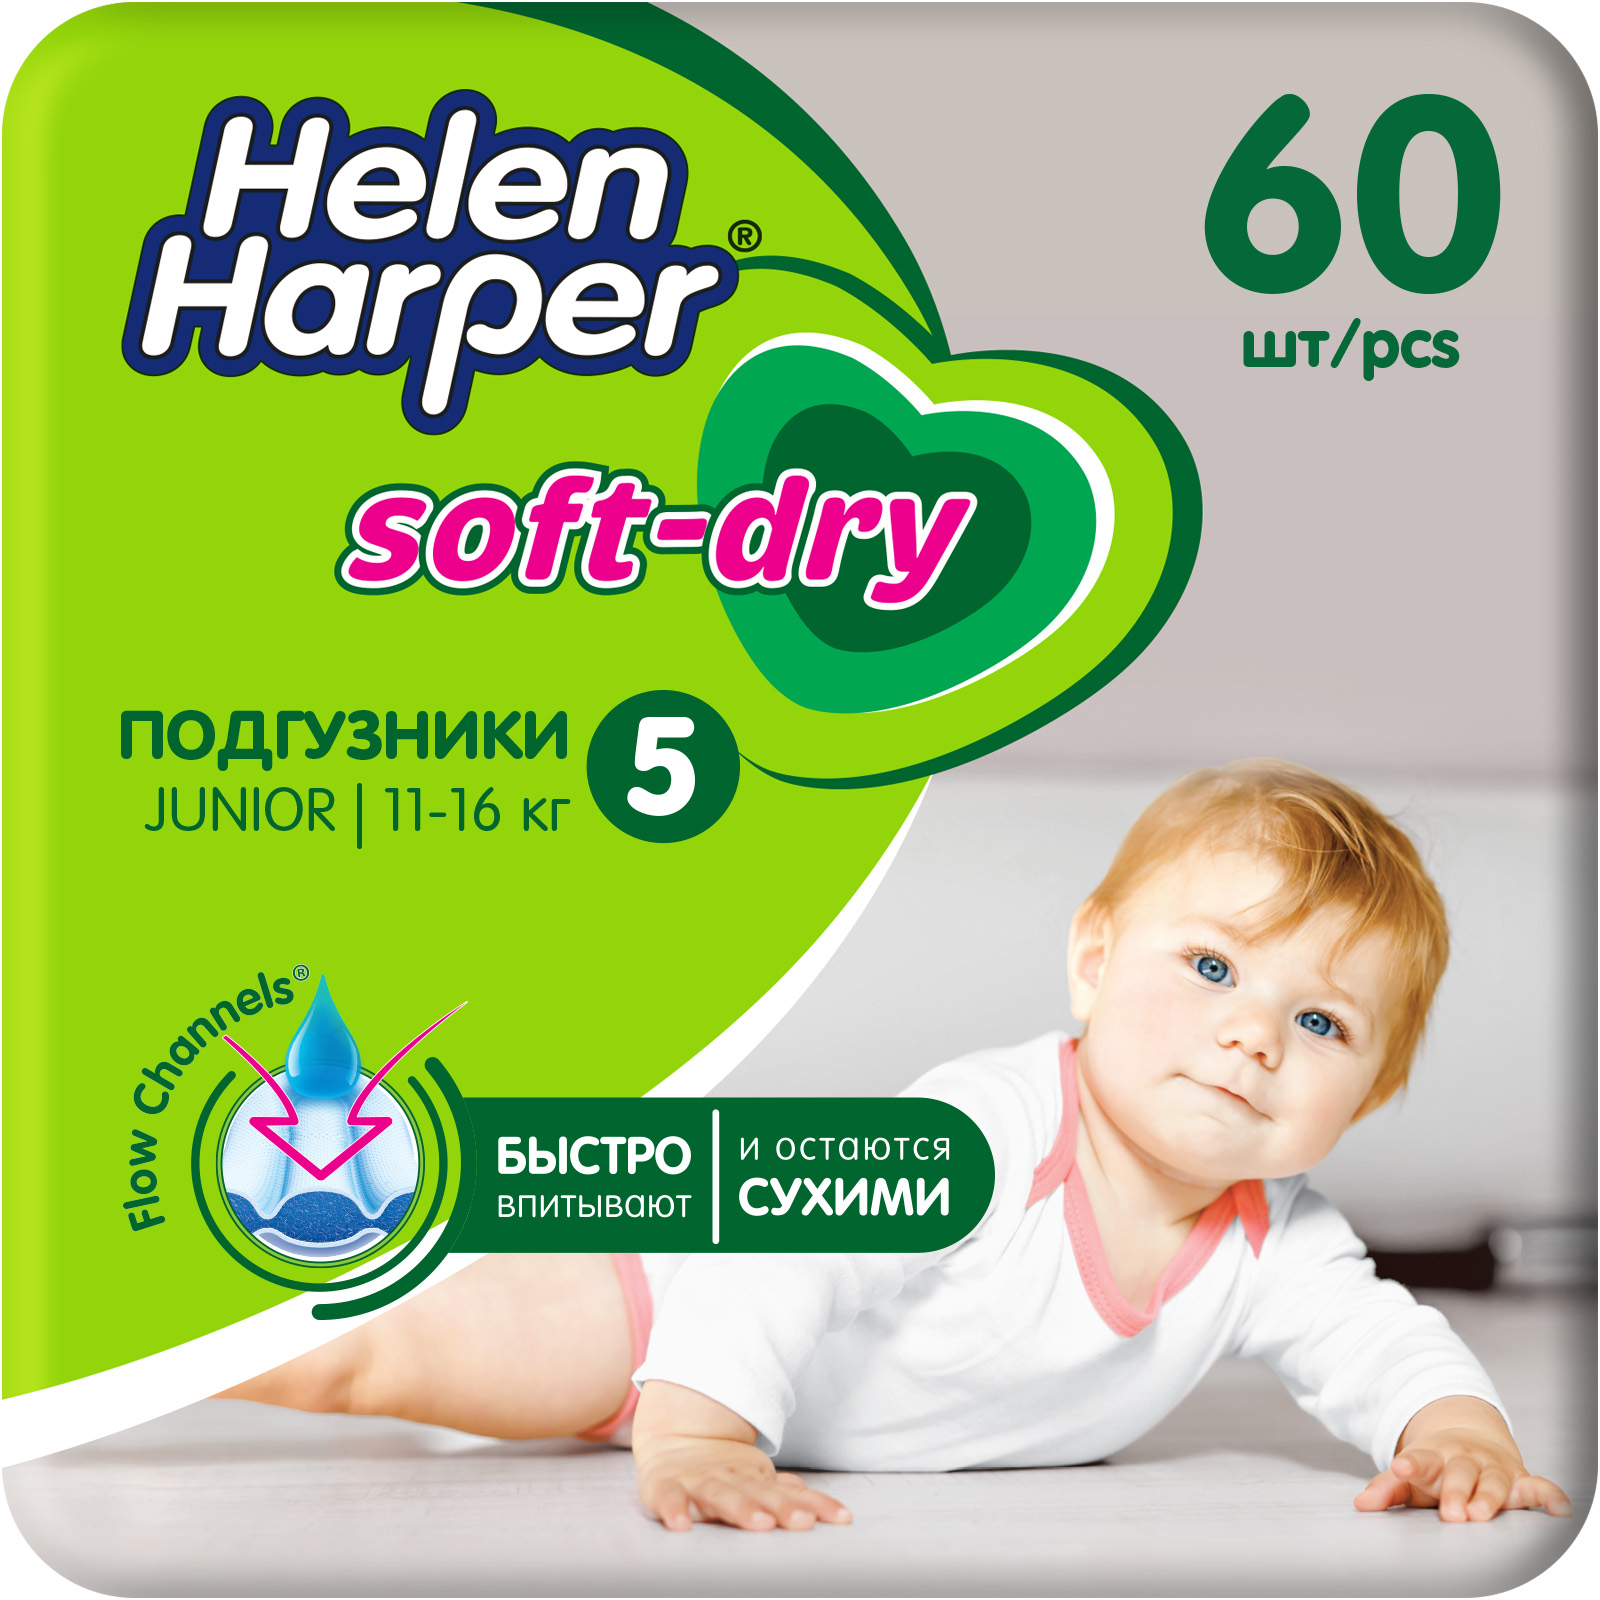 Подгузники детские Helen Harper Soft and Dry размер 5/Junior 11-16 кг 60 шт. - фото 1